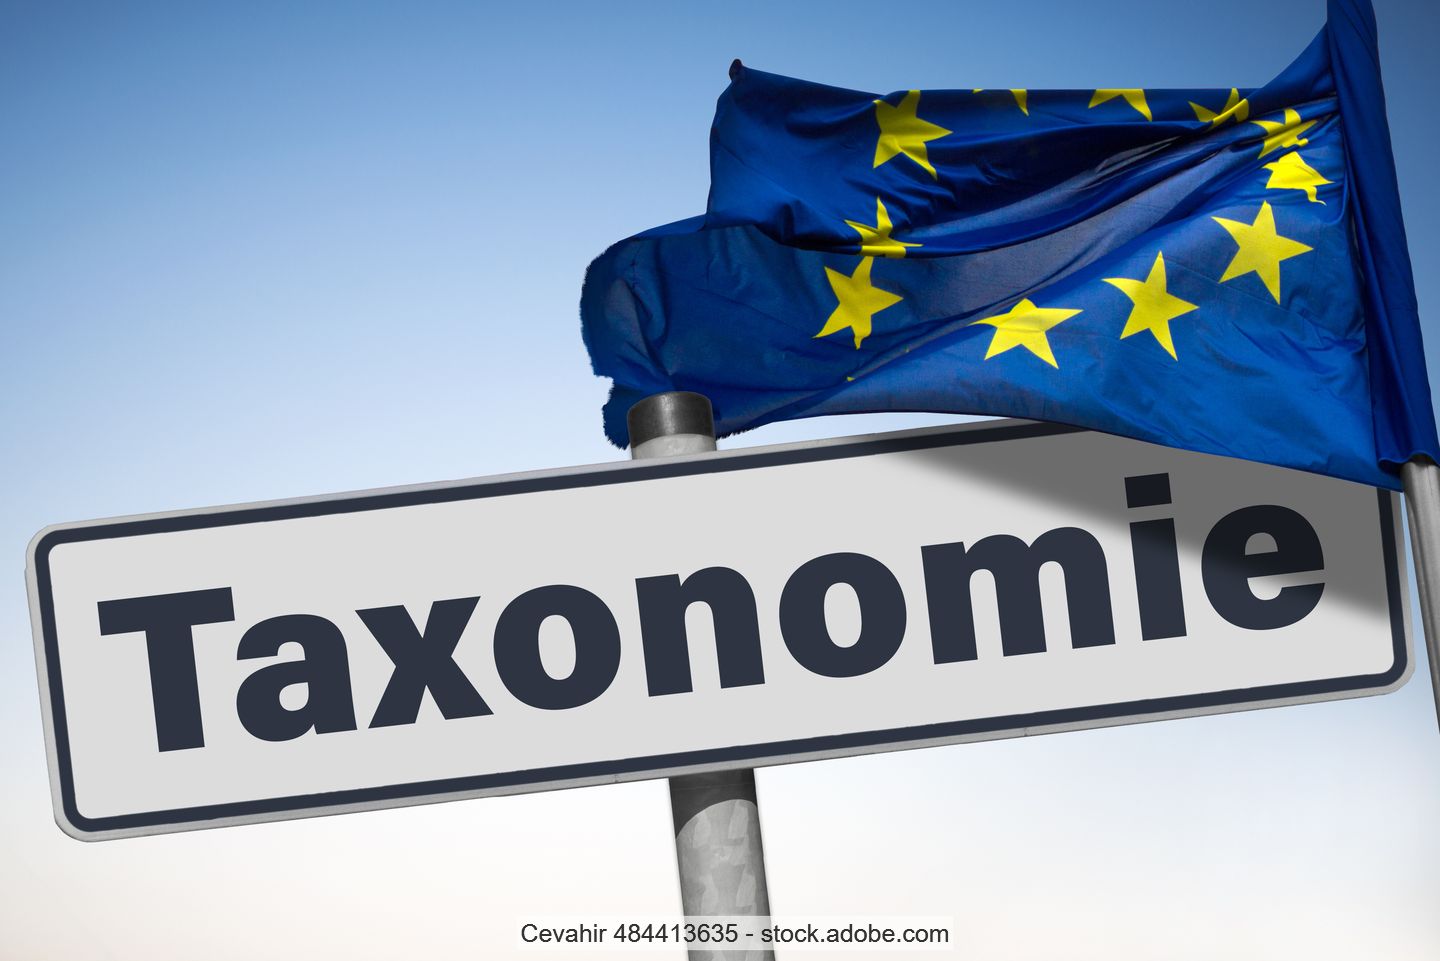 Symbolbild: weißes Schild mit schwarzer Aufschrift "Taxonomie" neben Fahnenmast mit der EU-Flagge